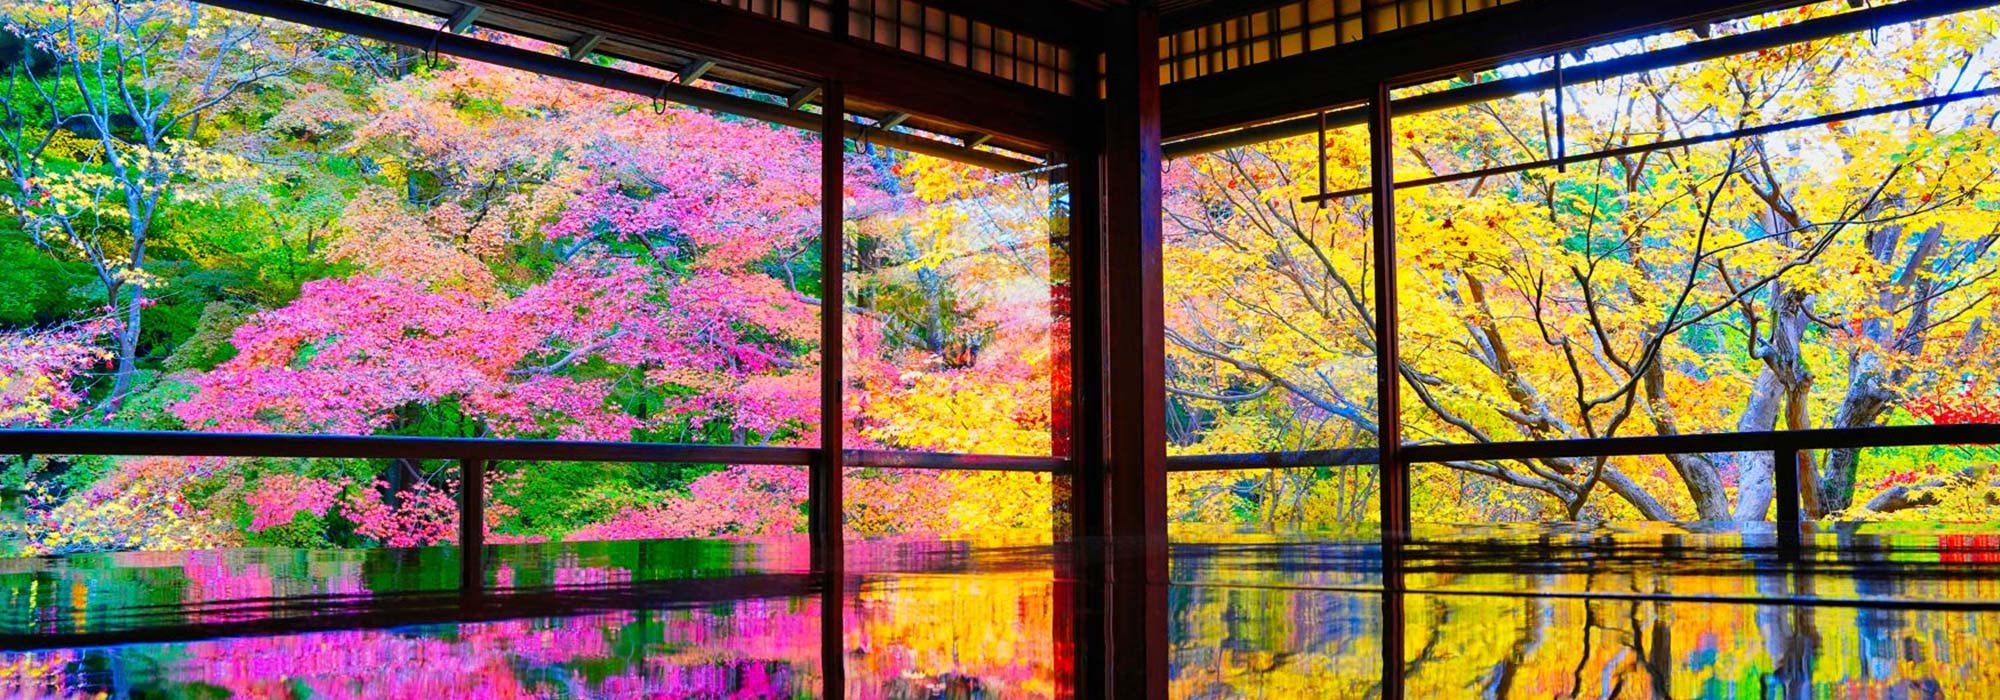 京都の景観2